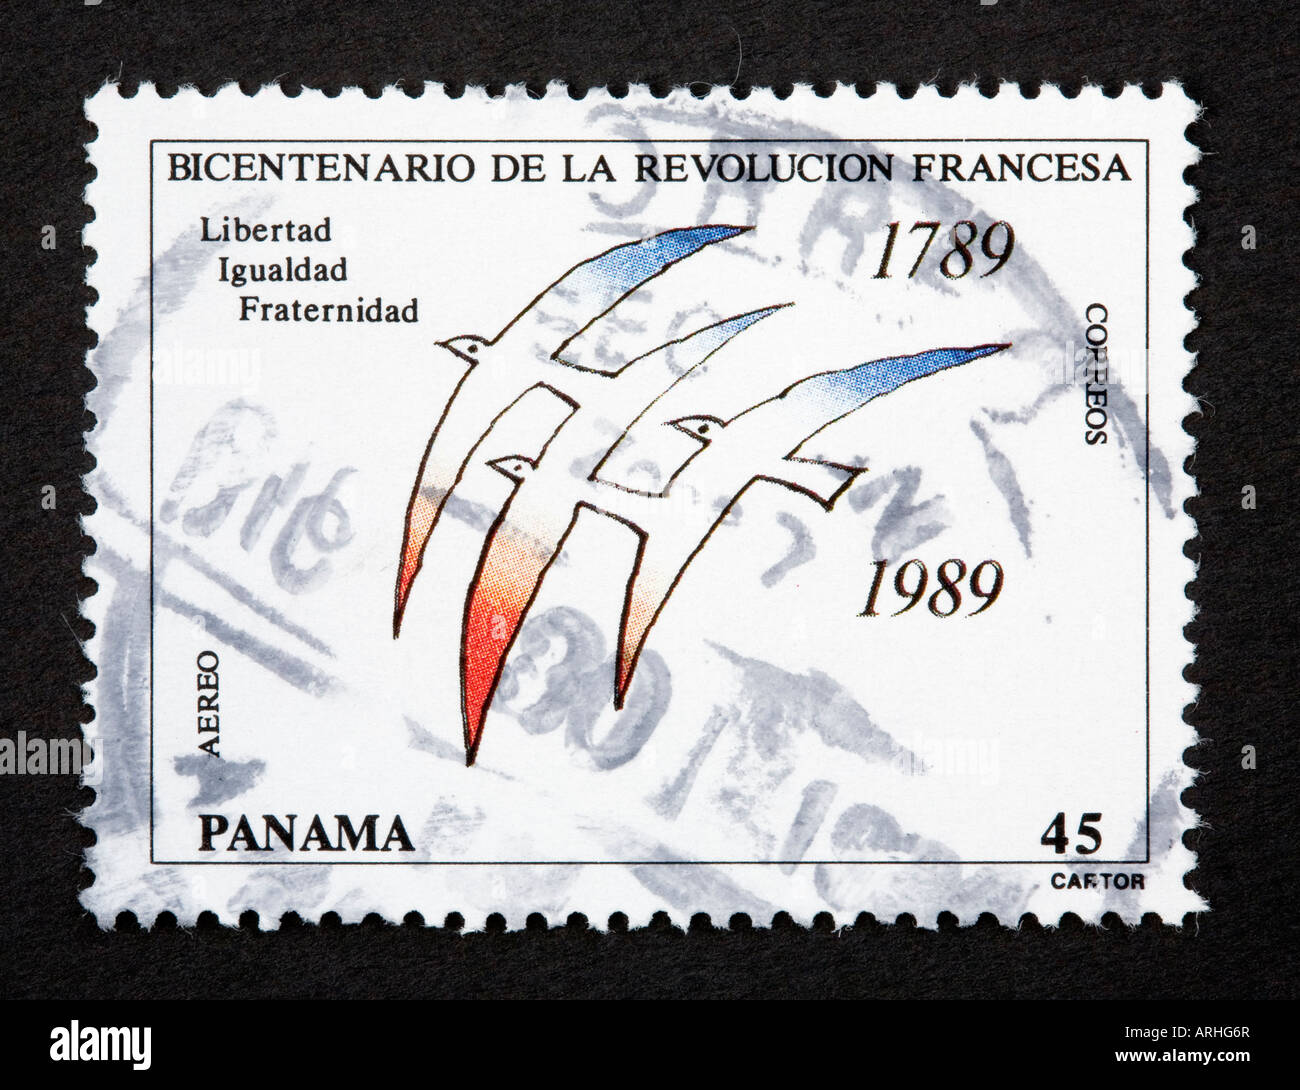 Panama postage stamp Stock Photo